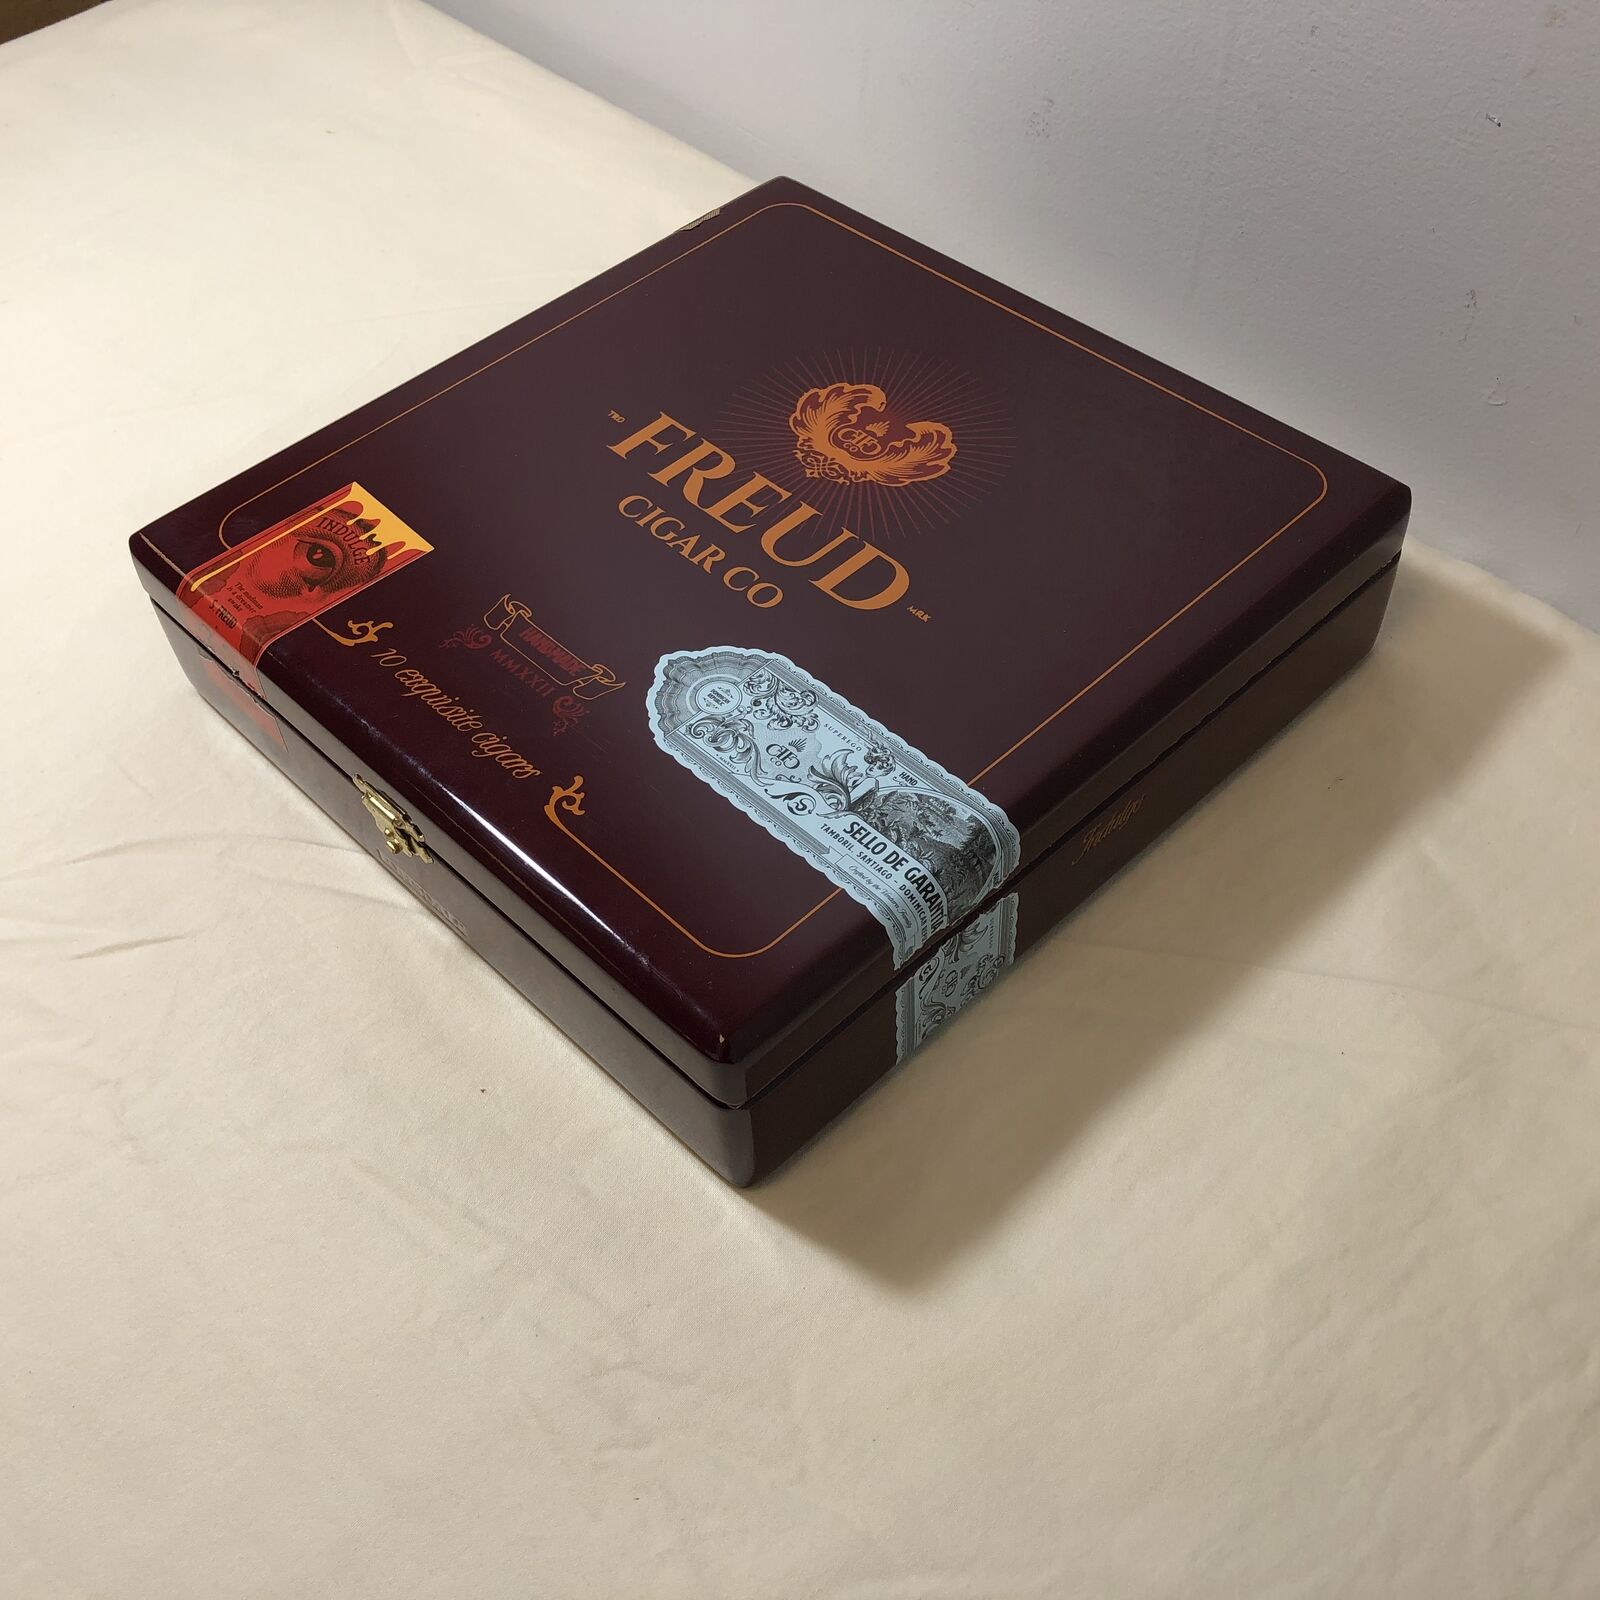 Freud Cigar Co Superego Lonsdale Empty Wooden Cigar Box 8.5x9x2